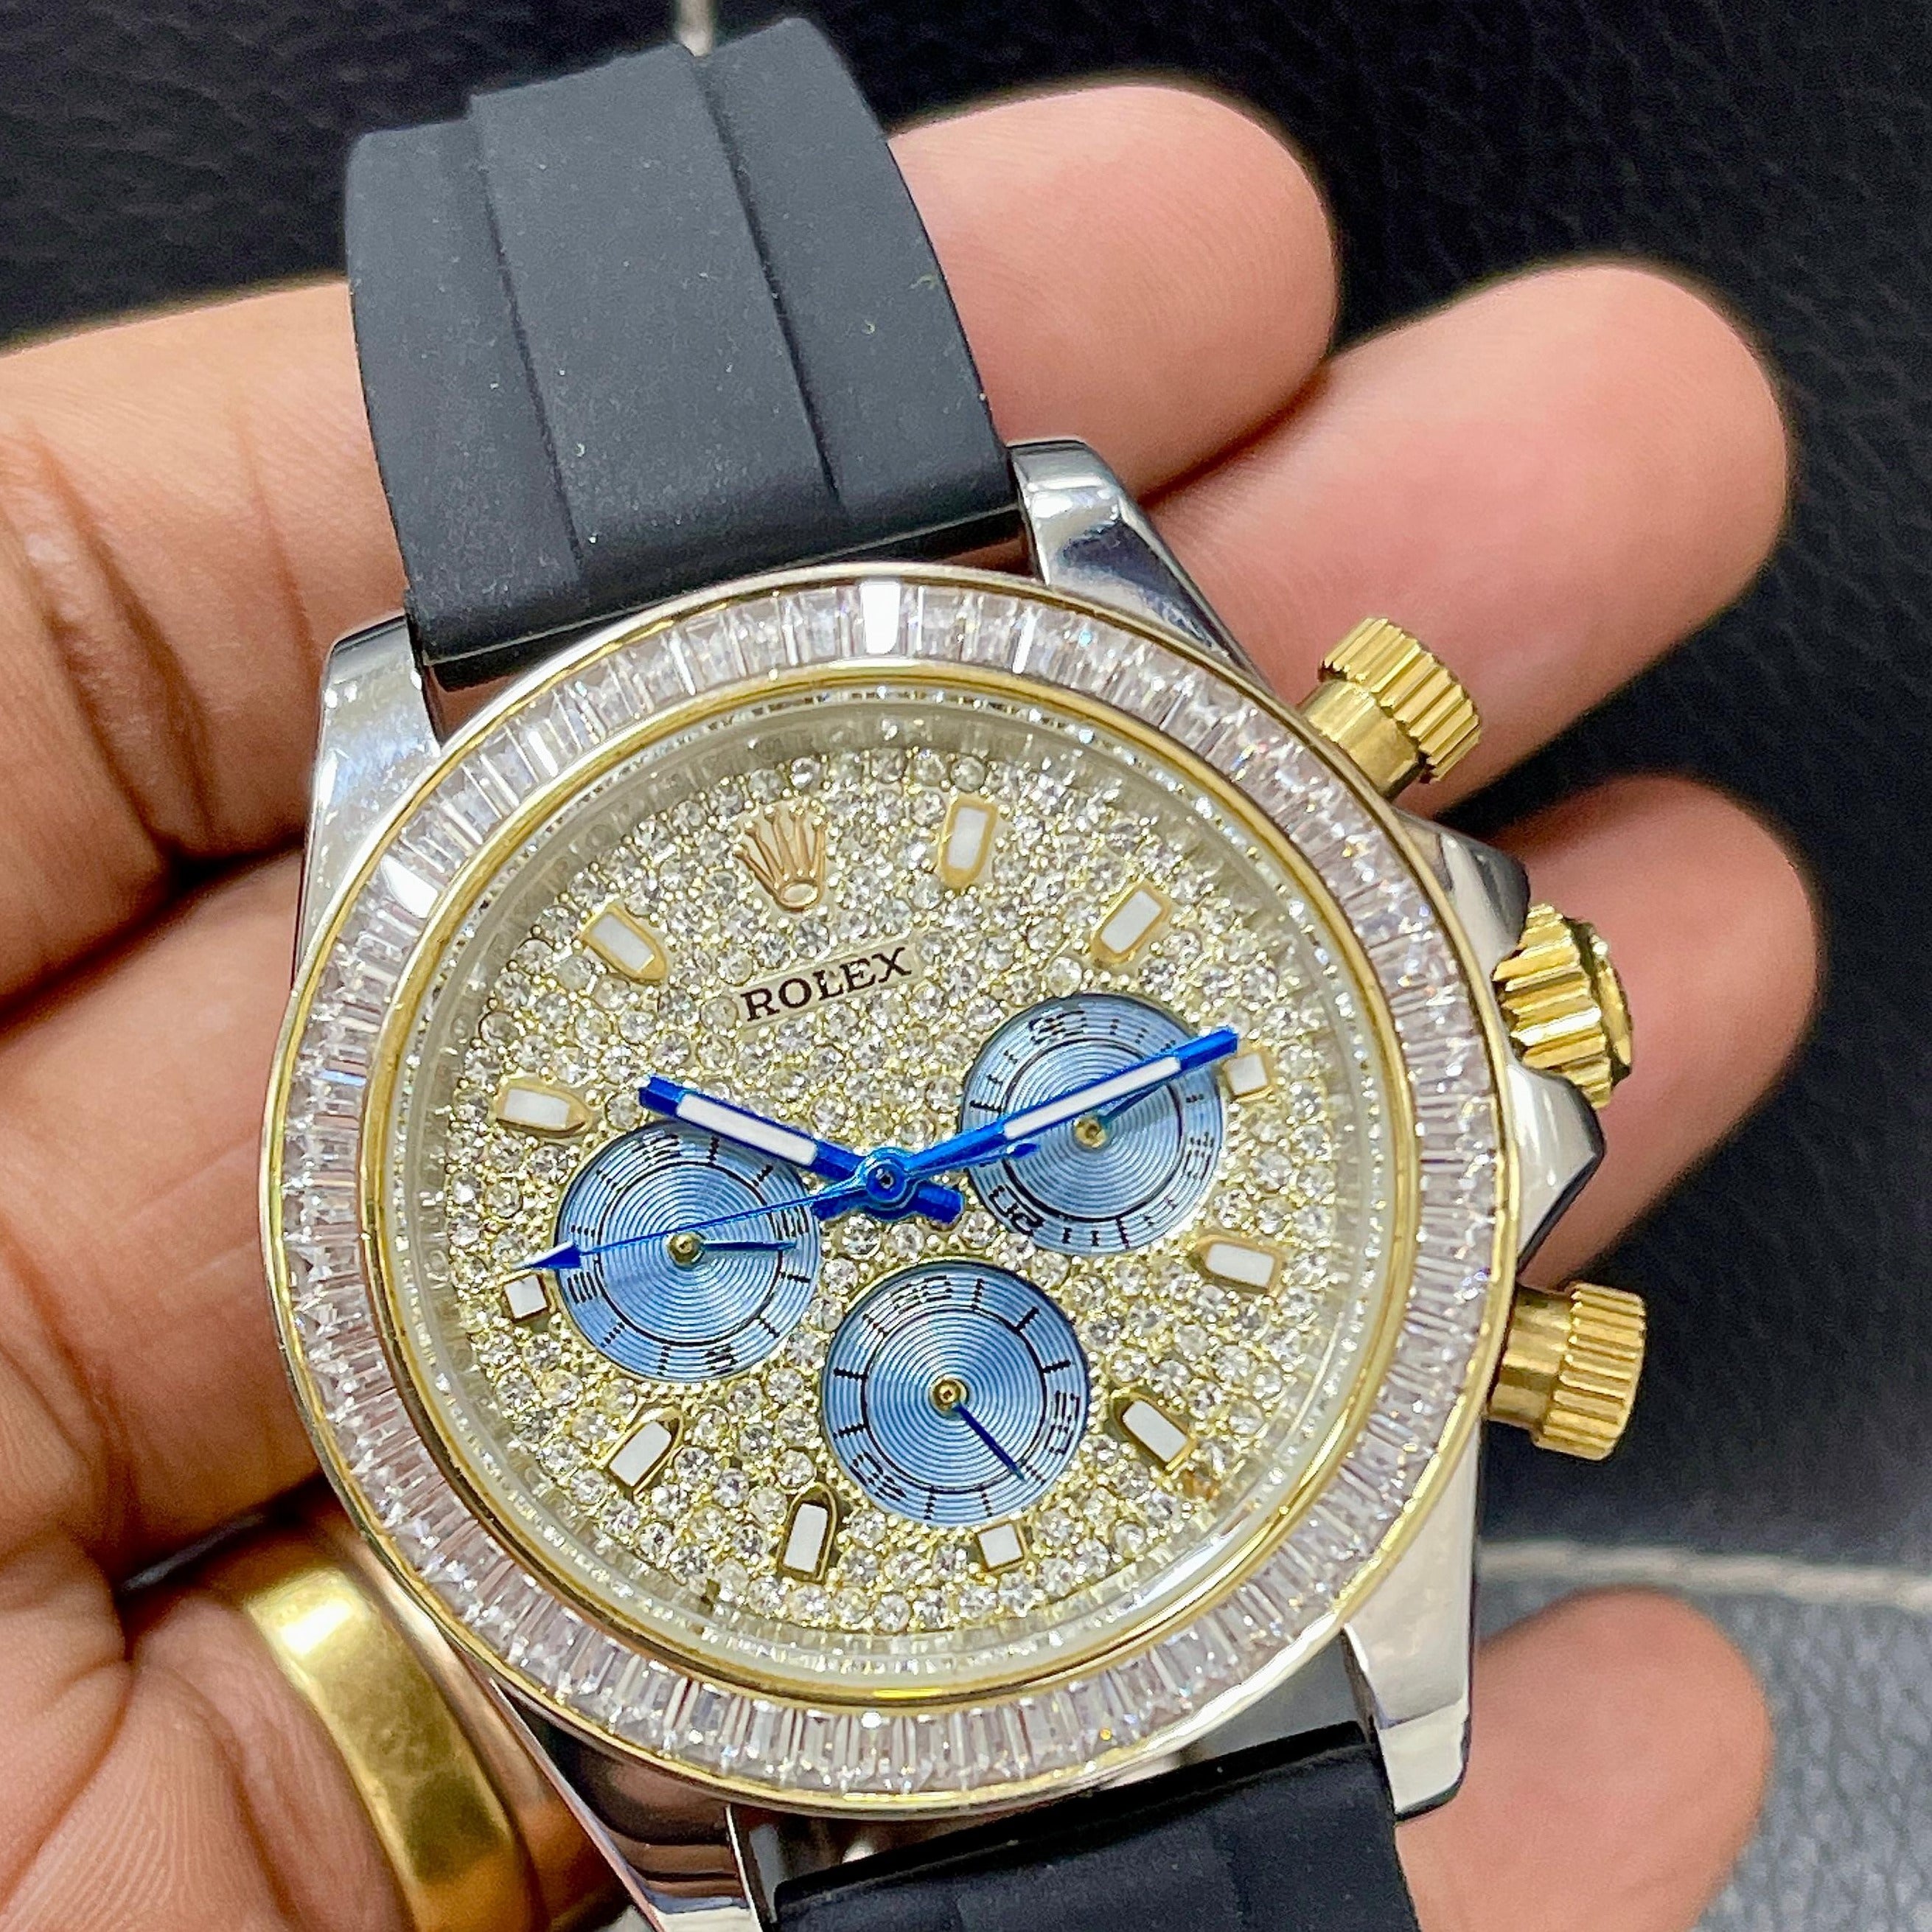 Amazing Diamond Studded Watch - AmazingBaba